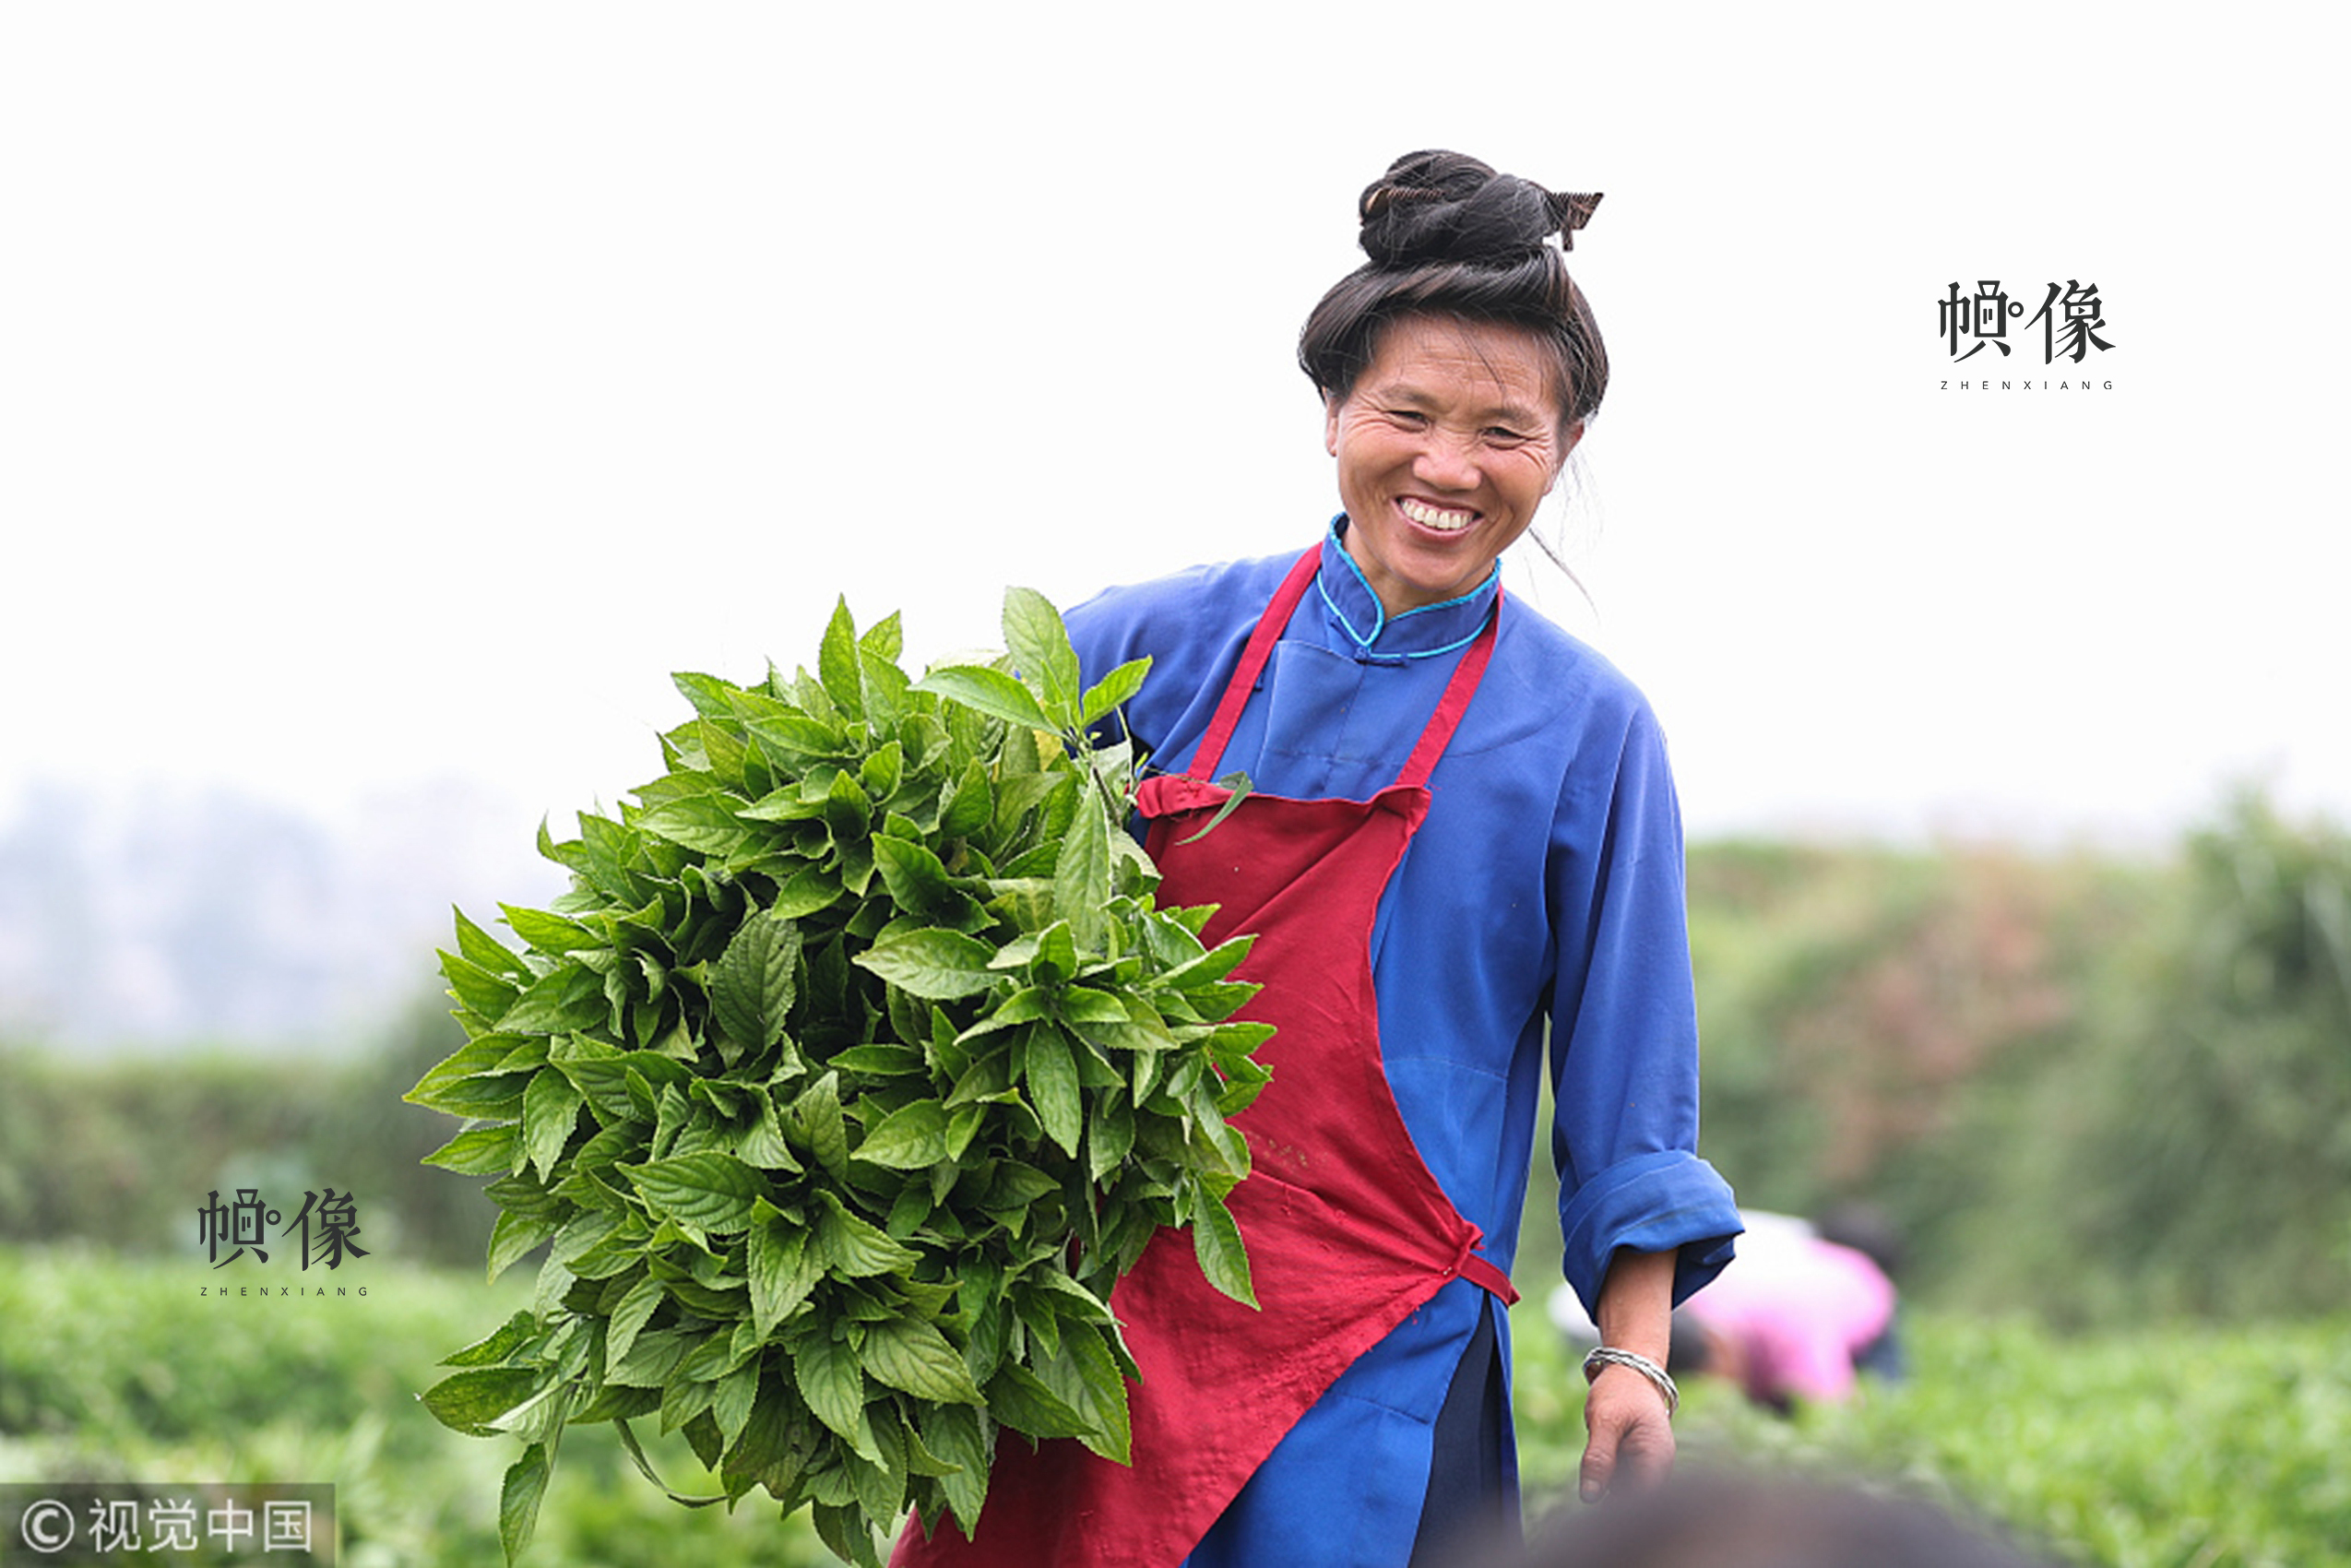 2017年10月11日，一位苗族婦女在田間抱著板藍根準備裝車。貴州中草藥種類繁多，隨著貴州省脫貧攻堅戰役的打響，中草藥産業日漸成為貴州山區農民脫貧致富的主要渠道之一。視覺中國